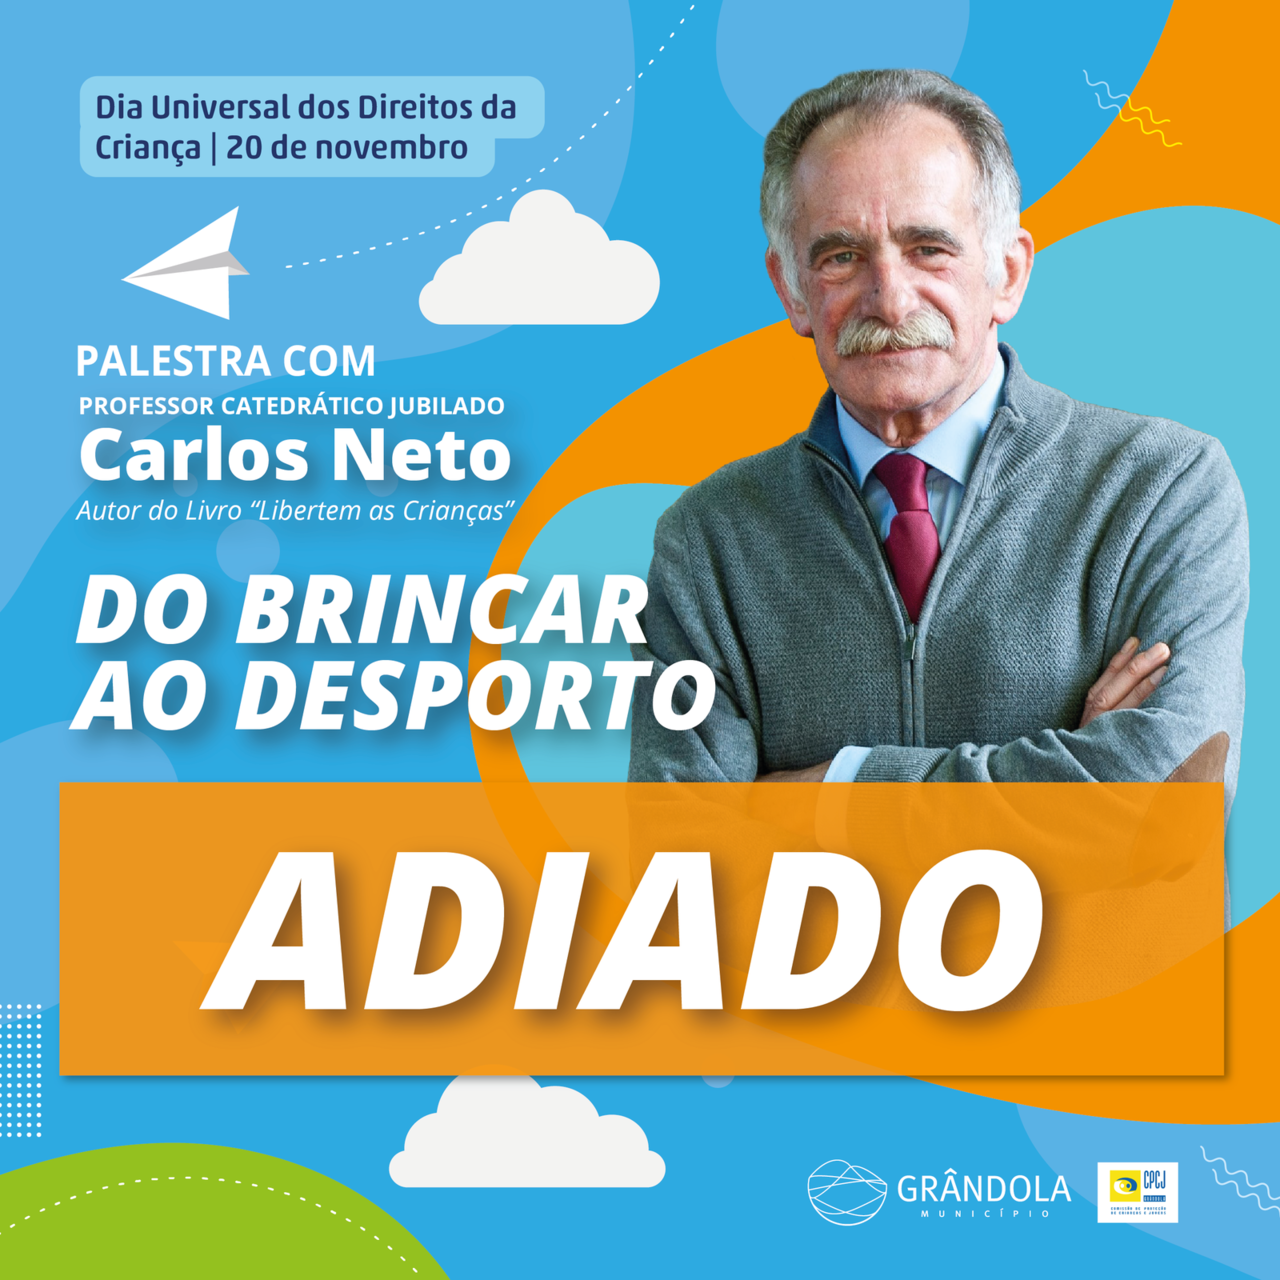 PALESTRA |ADIADO | “Do Brincar ao Desporto” com o Professor Catedrático Jubilado Carlos Neto 